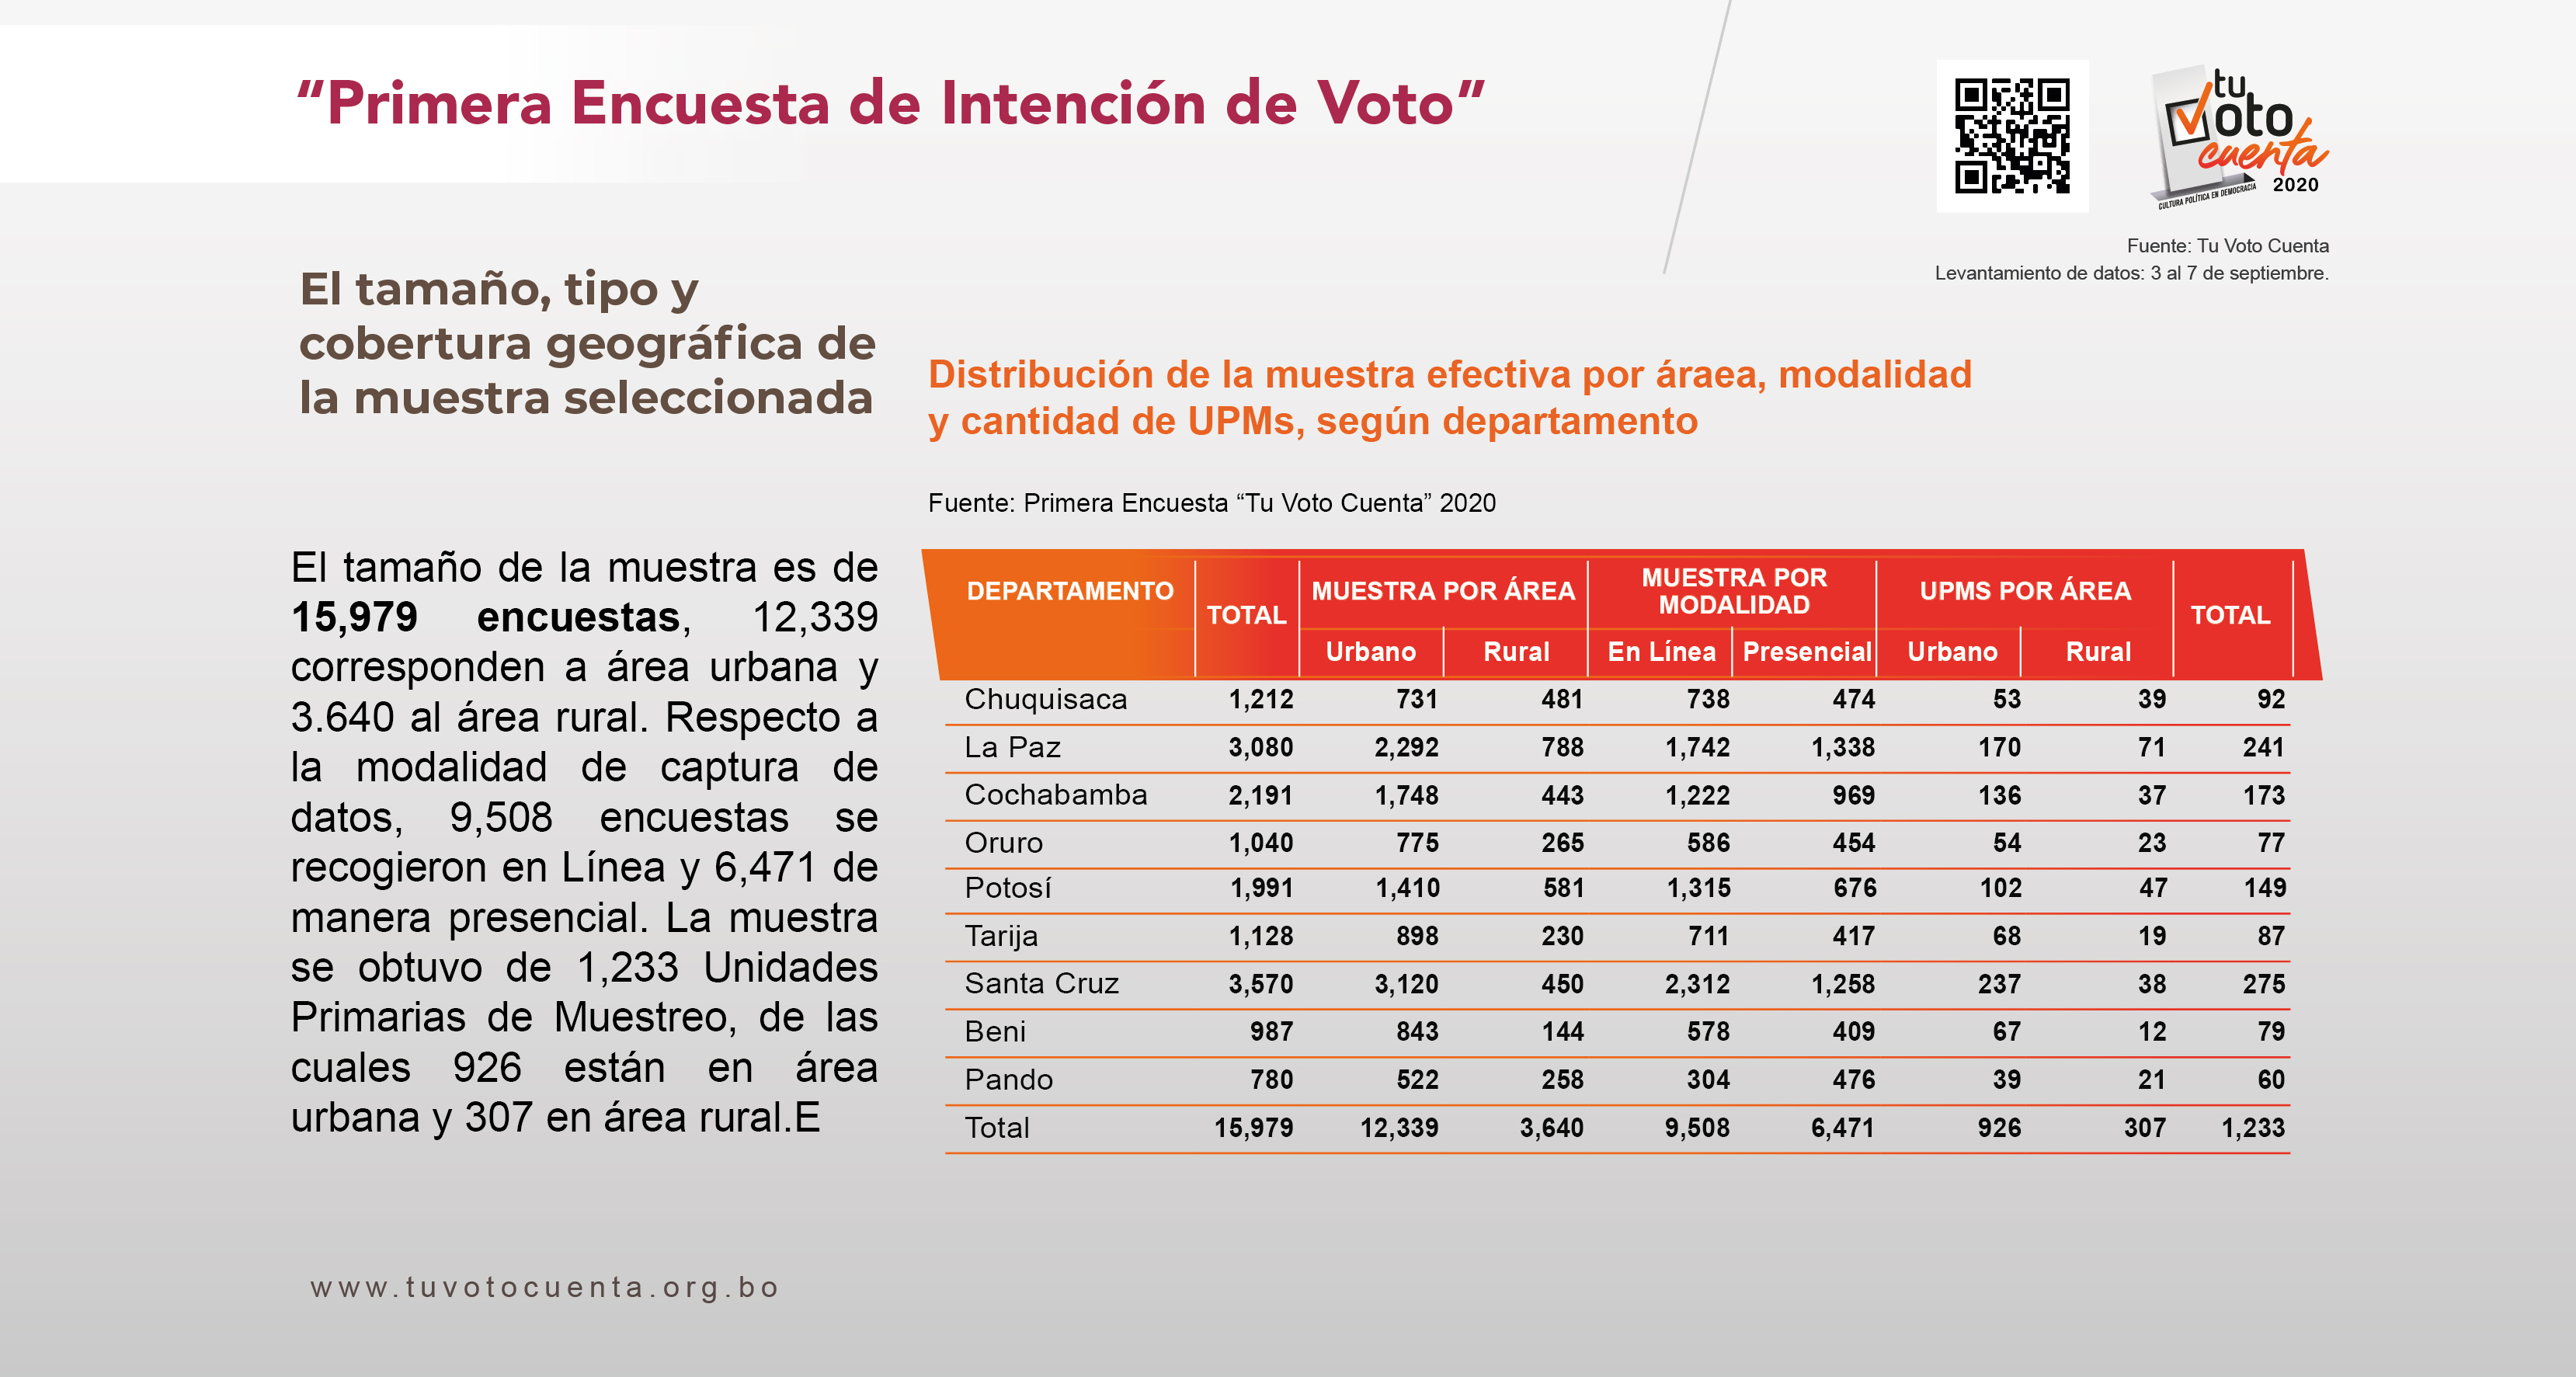 Ficha técnica de la primera encuesta publicada por la alianza Tu Voto Cuenta el pasado 16 de septiembre.